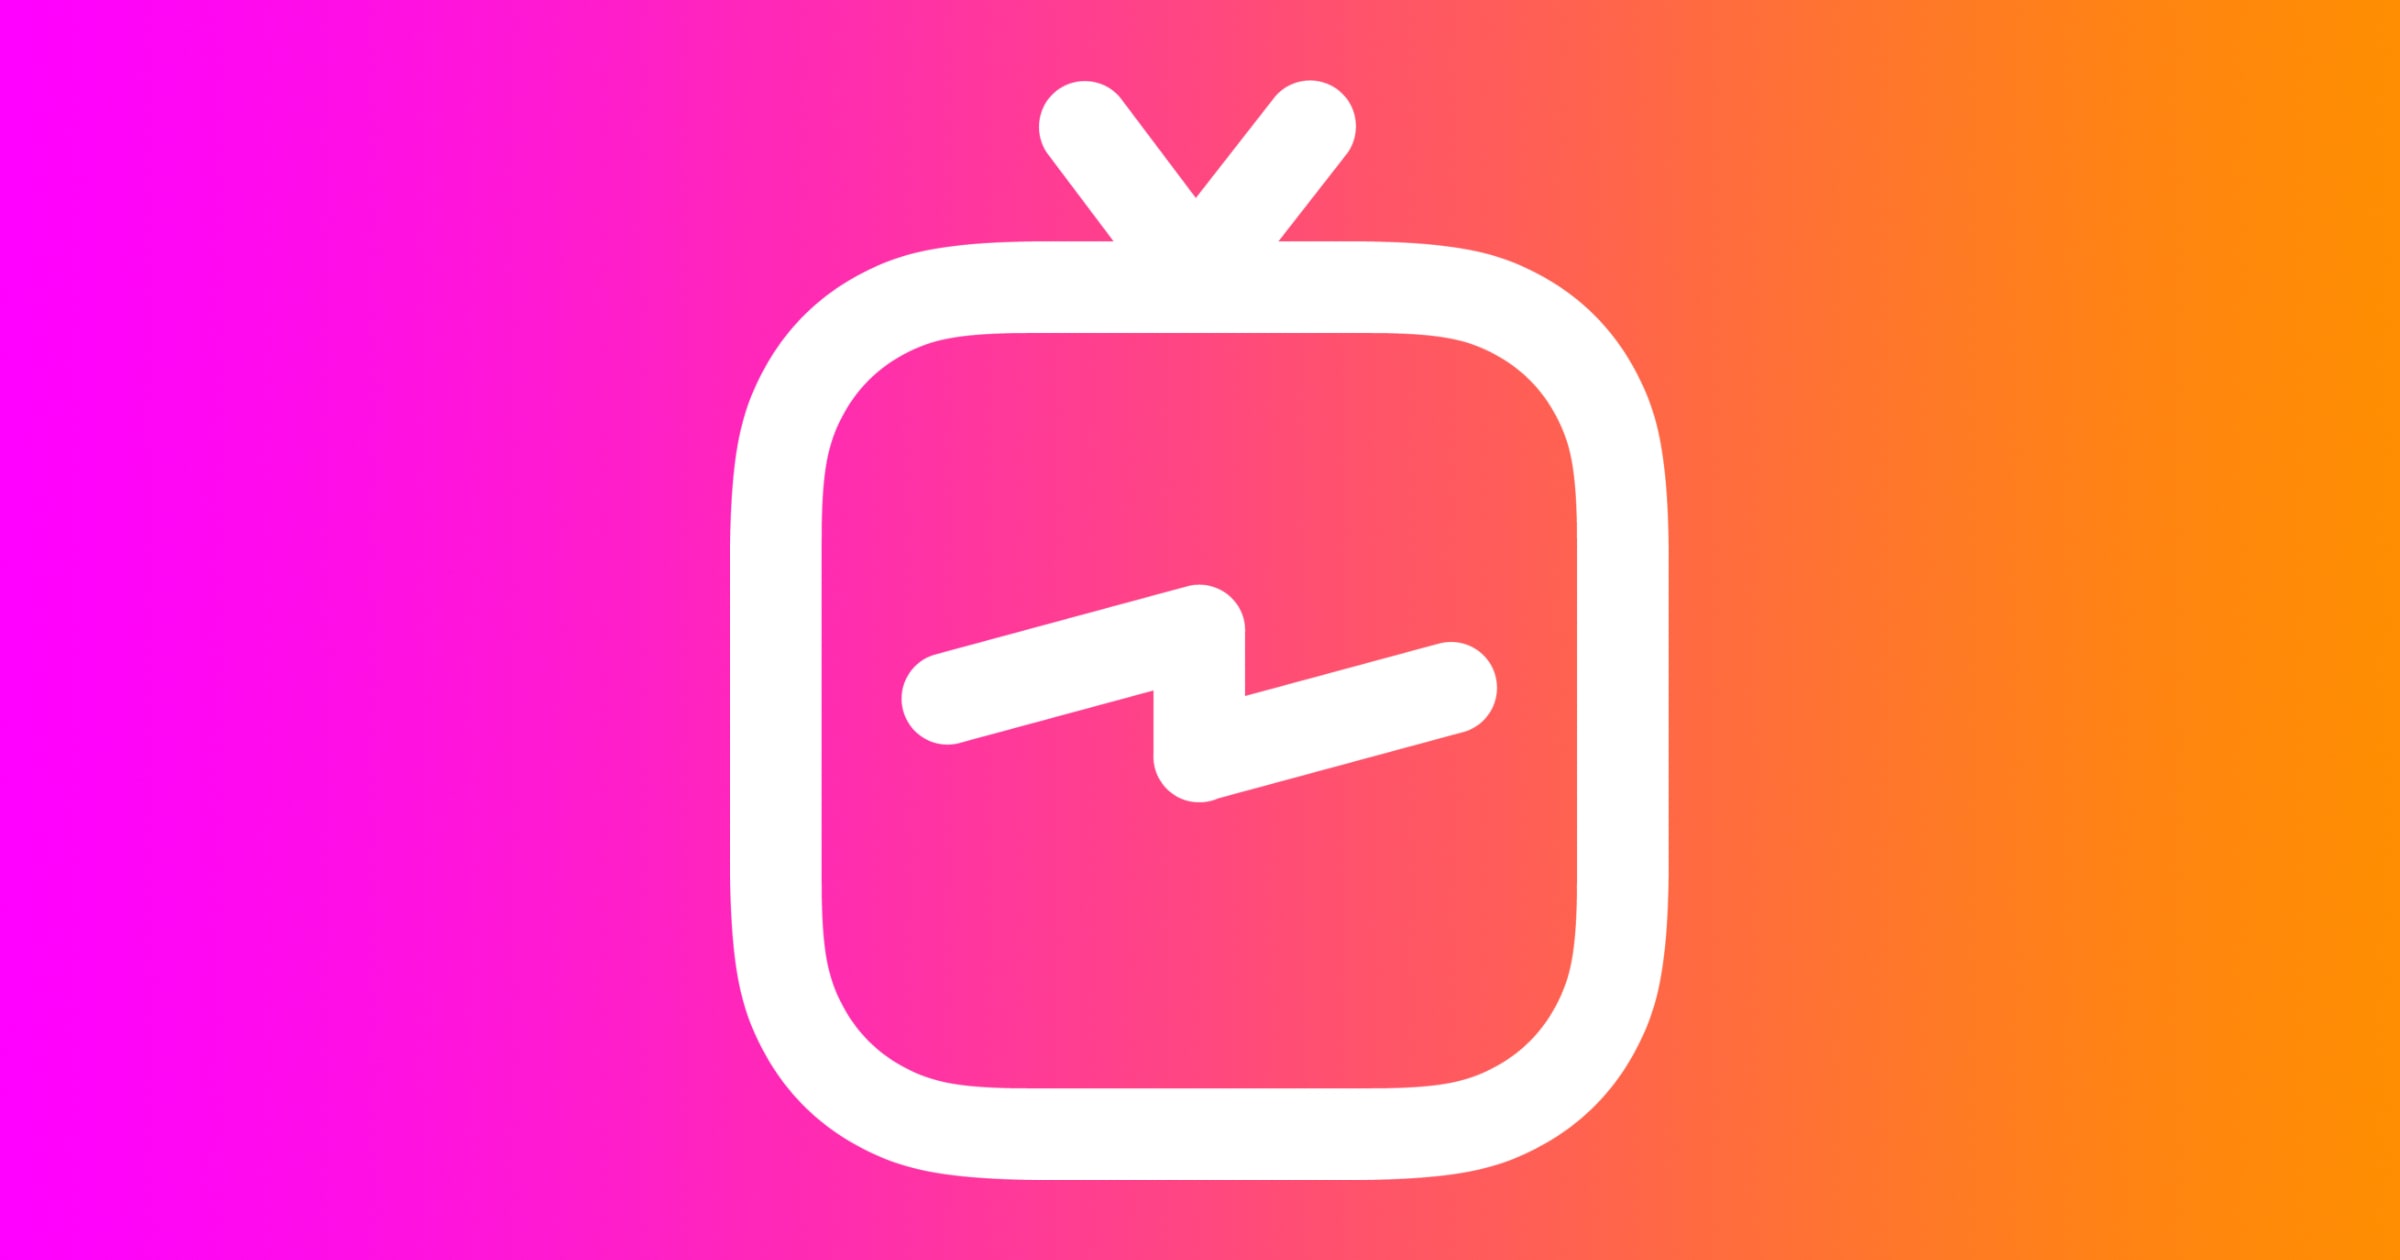 IGTV logo